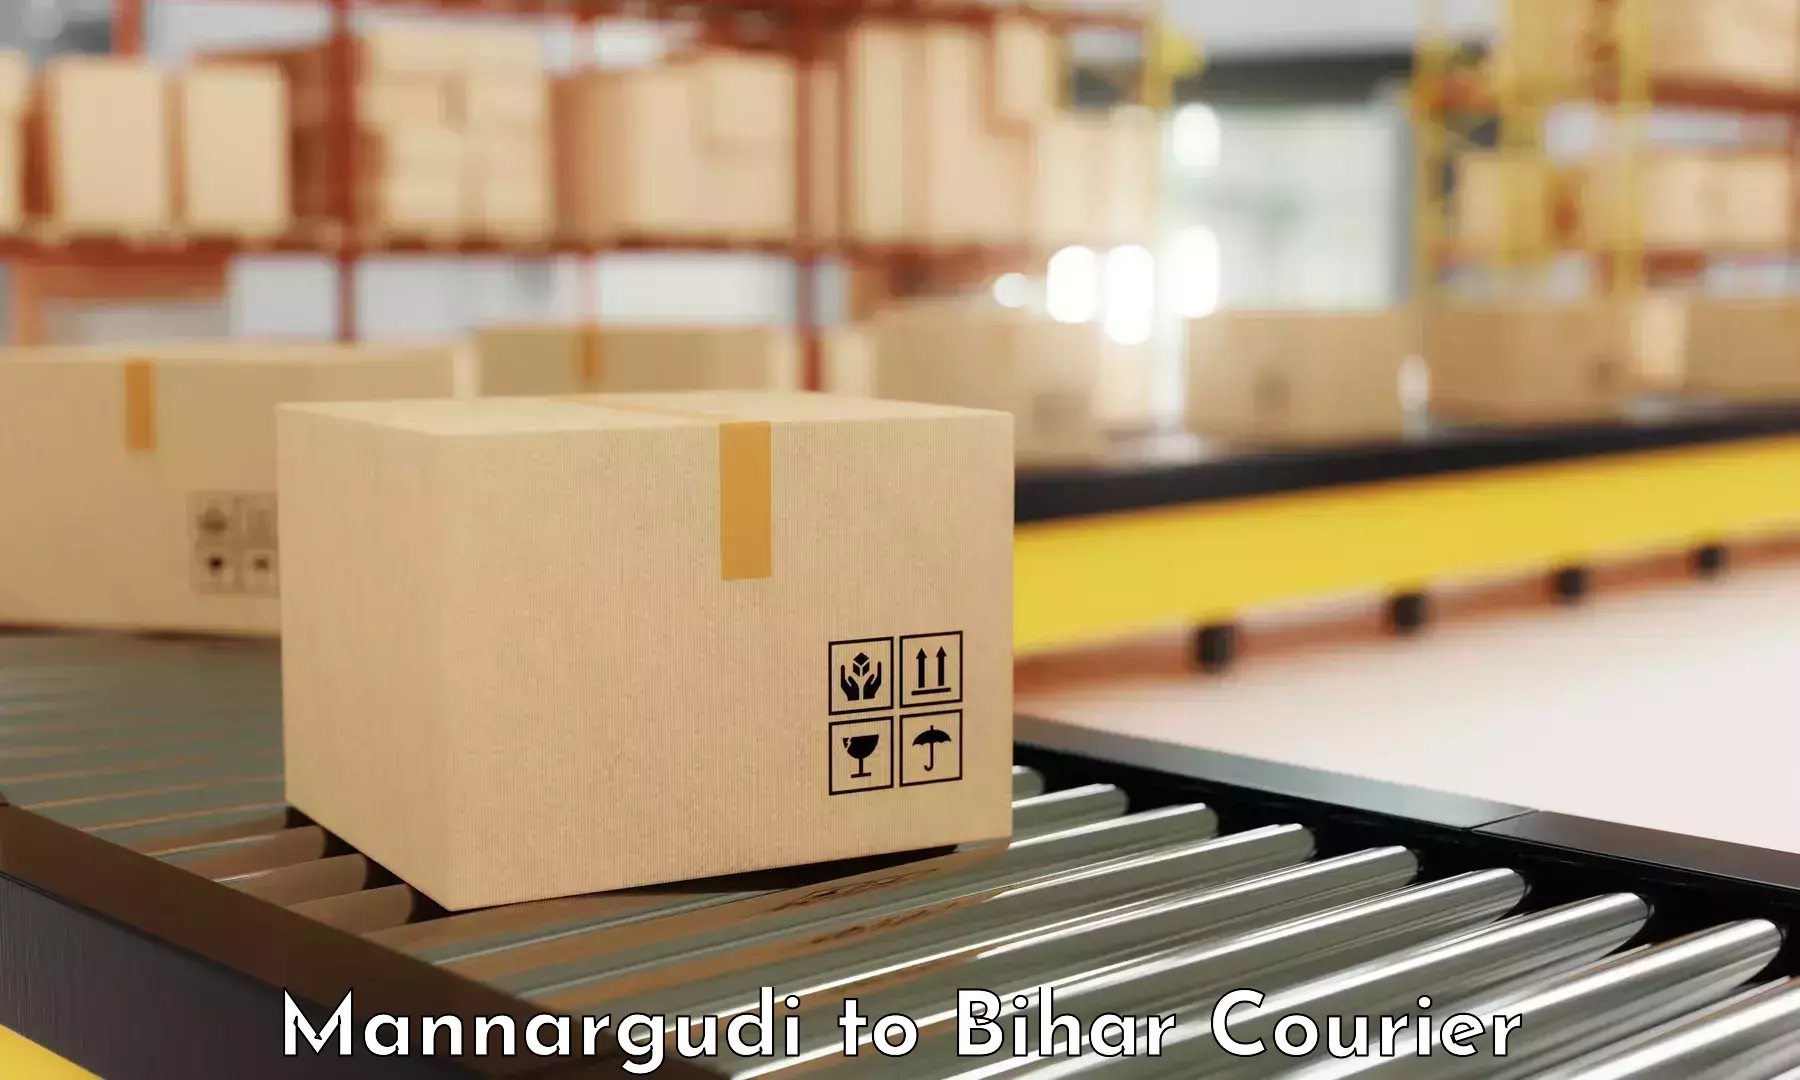 Reliable courier service Mannargudi to Bakhtiarpur